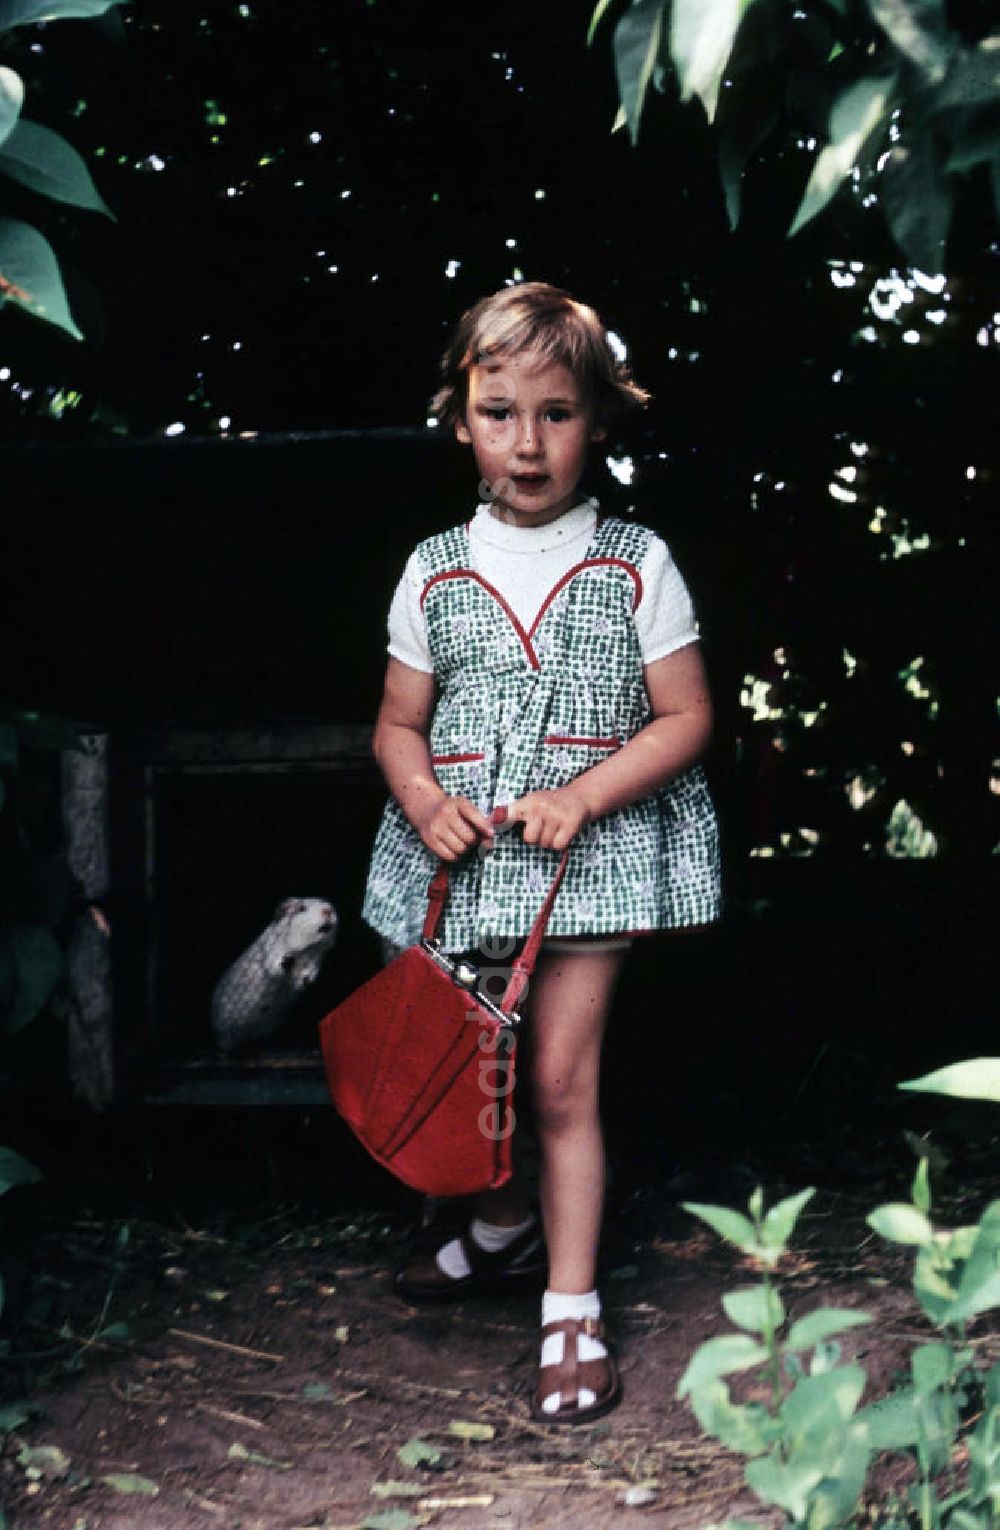 GDR picture archive: Schkopau - Mädchen trägt stolz ihre rote Handtasche. Girl proudly wears her red purse.